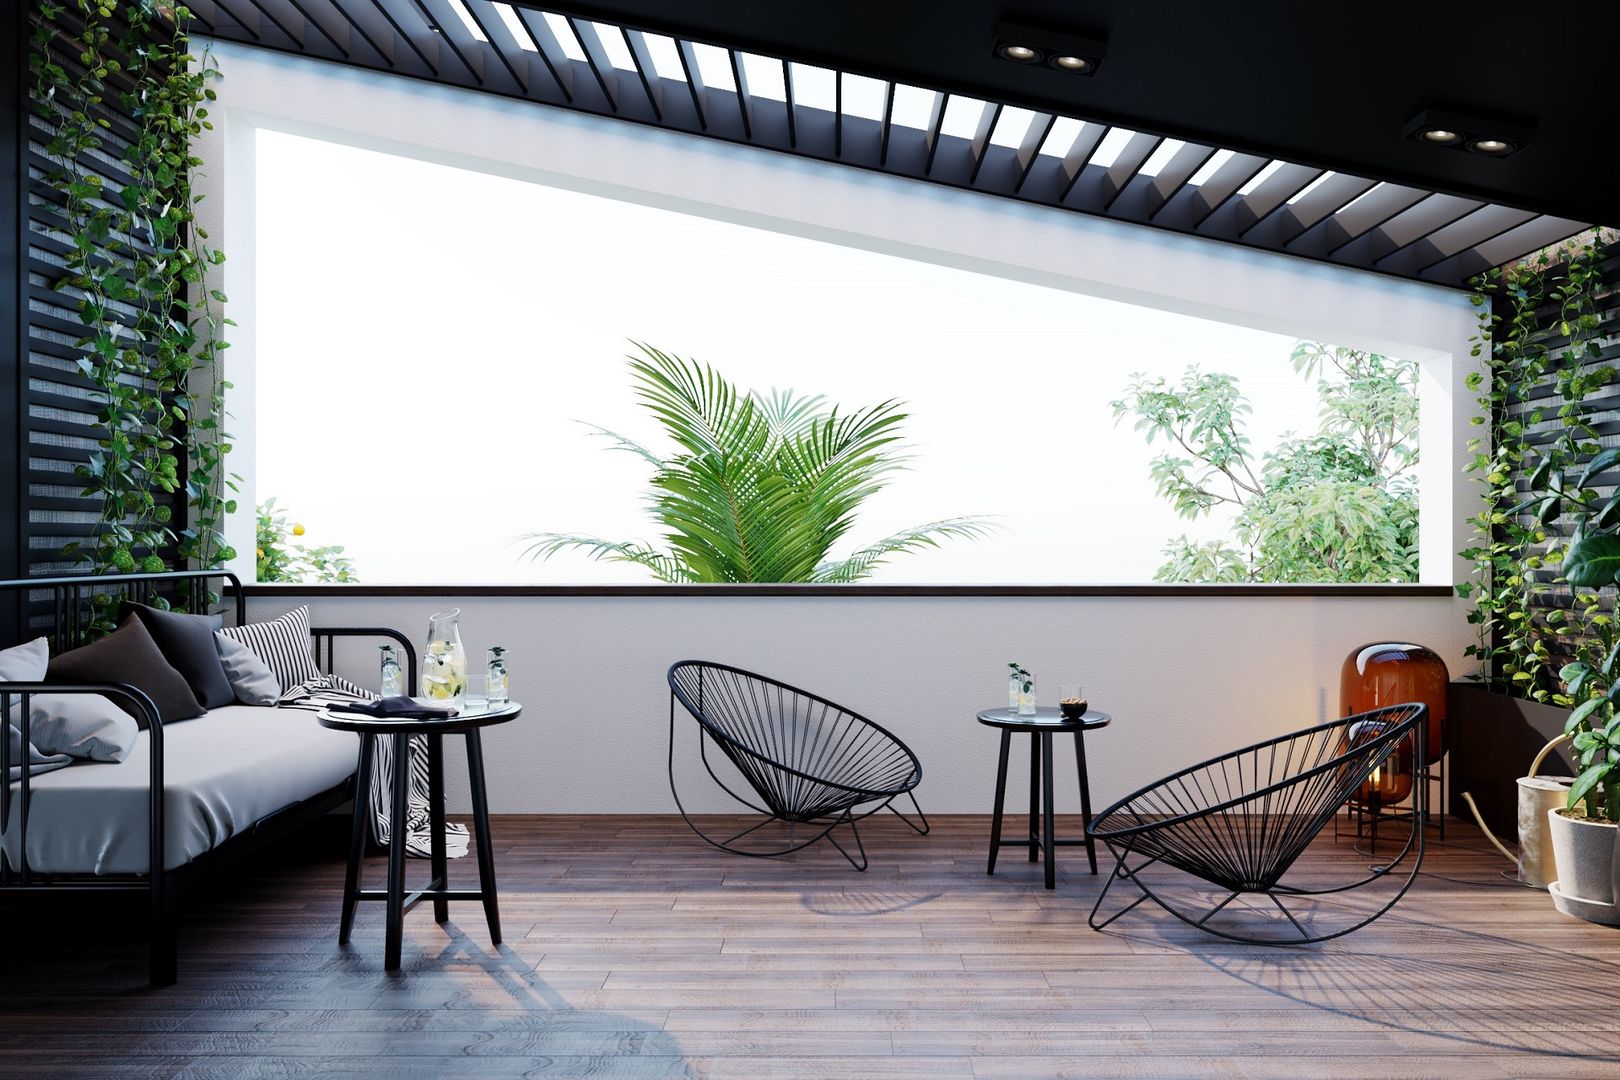 Mobiliario exterior moderno y minimalista decorar con estilo la terraza